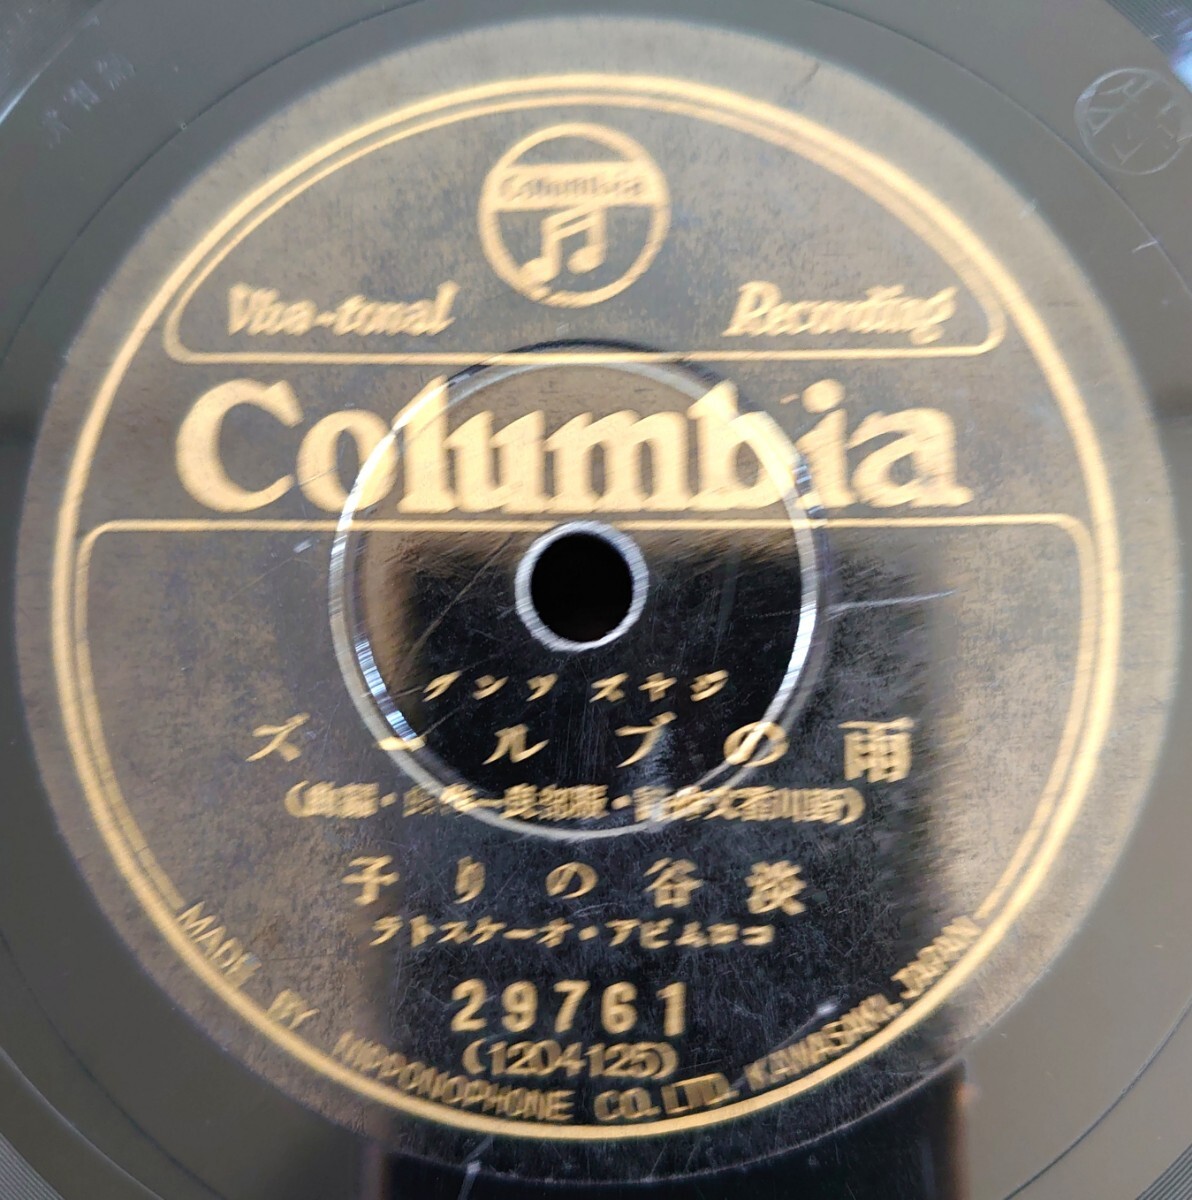 【蓄音機用SP盤レコード】Columbia ジヤズング/雨のブルース 淡谷のり子/バンヂヨーで唄へば 中野忠晴/SPレコード ジャズソング_画像1